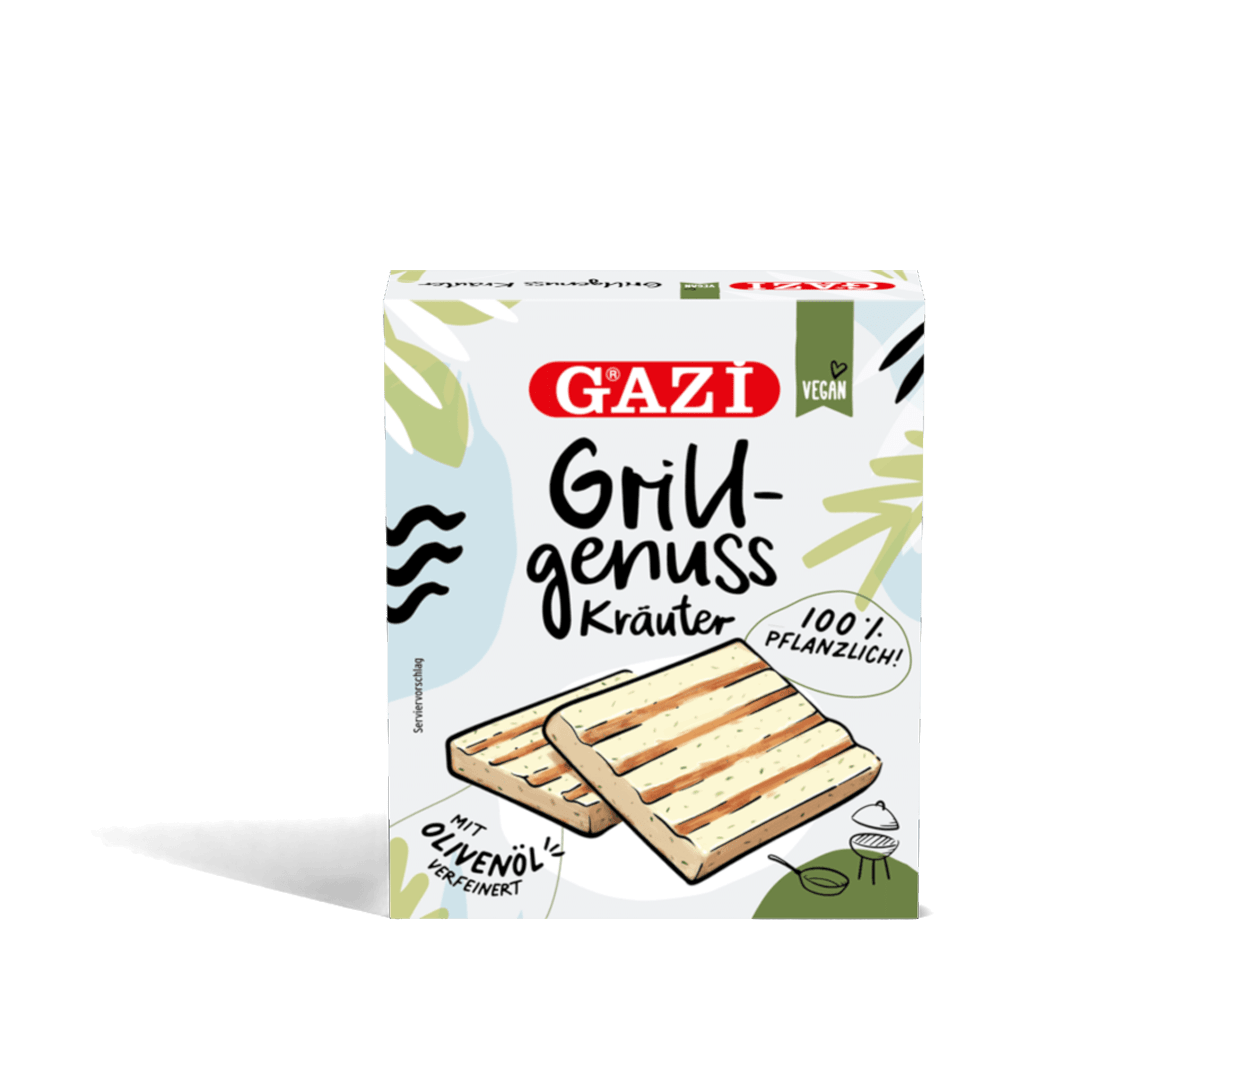 GAZi Vegan Grillgenuss